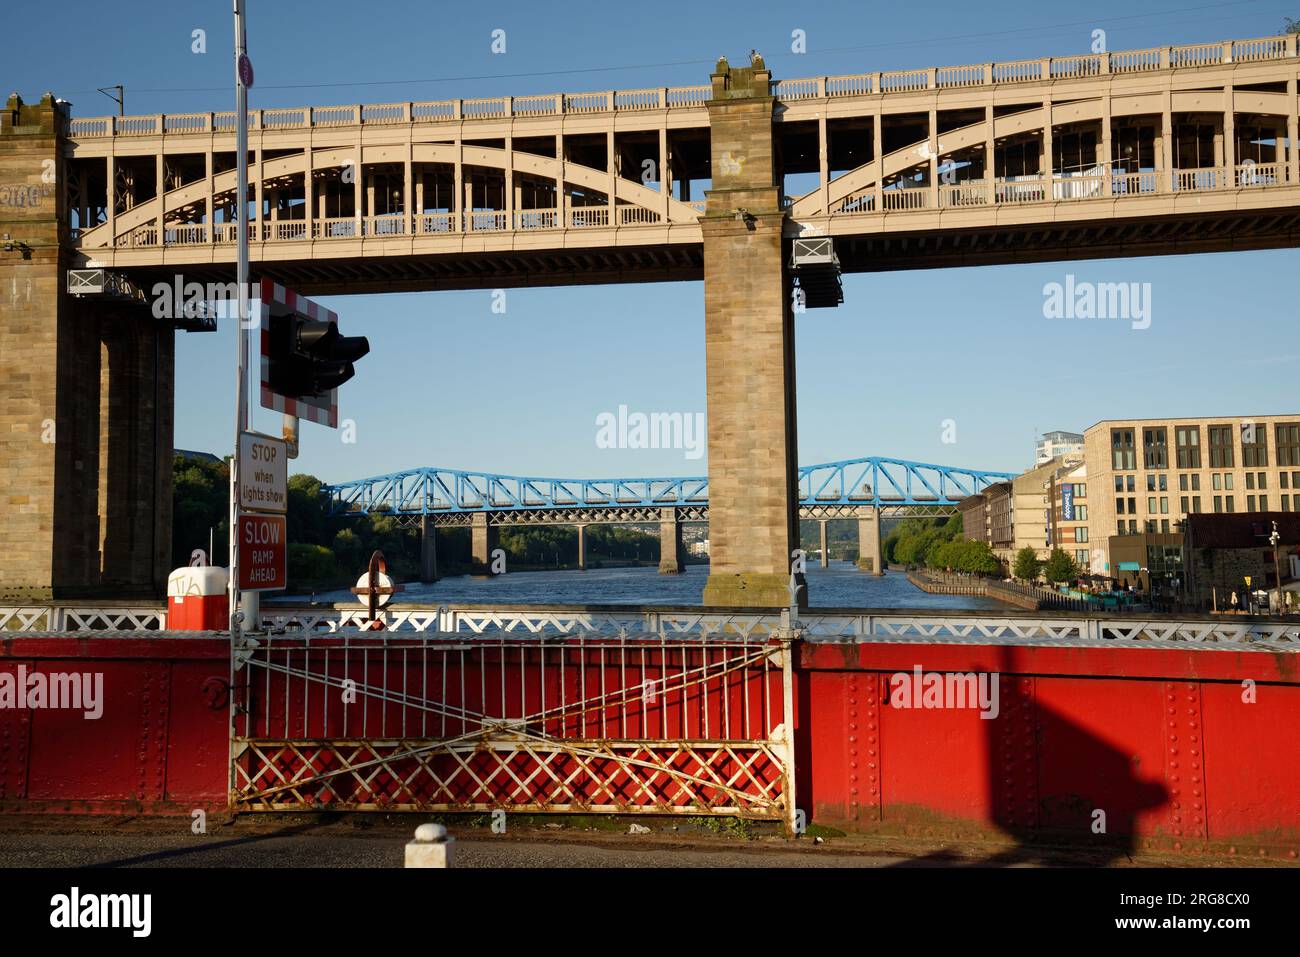 Le High Level Bridge à Newcastle. Pont tournant en métal peint en rouge et blanc au premier plan au-dessus de la rivière Tyne. Banque D'Images